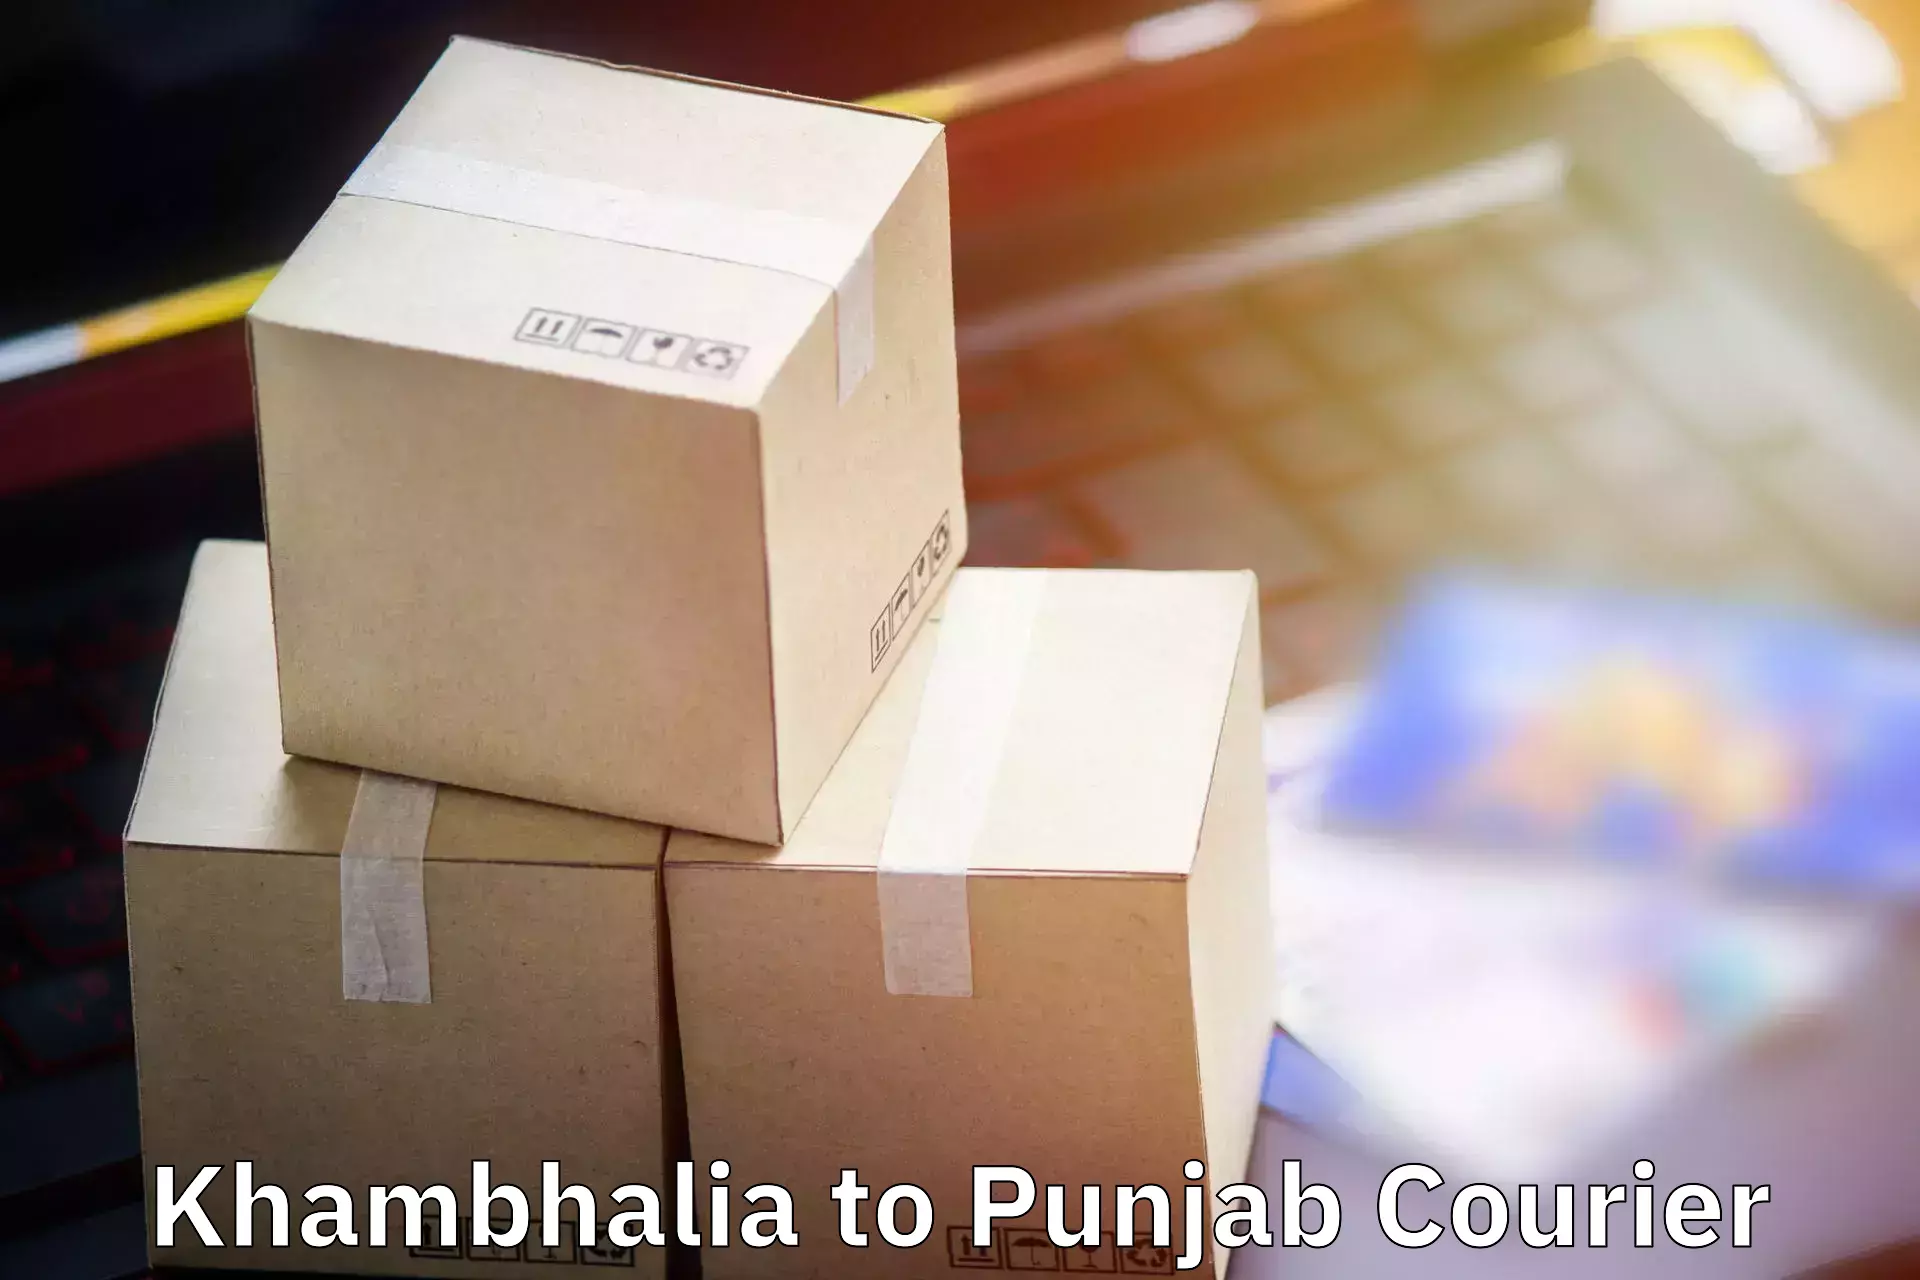 Baggage shipping schedule Khambhalia to Zirakpur